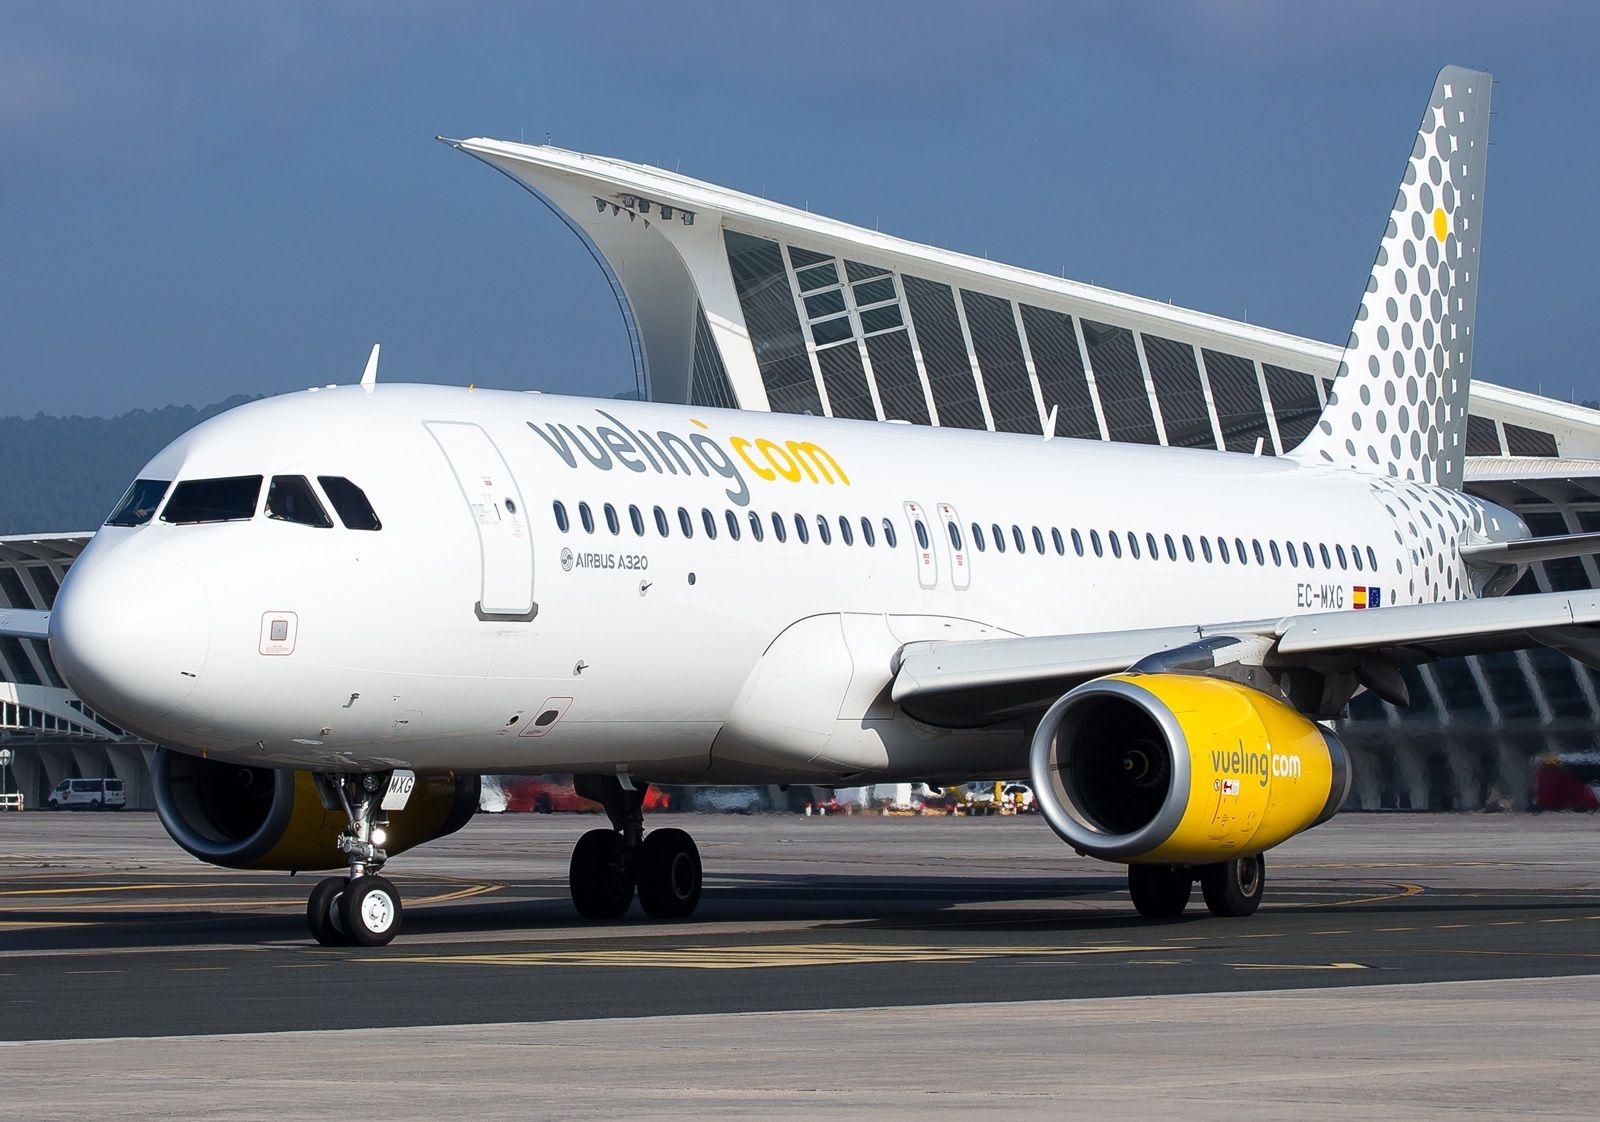 Las agencias de viajes rompen con Vueling por considerarlo un "proveedor hostil". Foto: Europa Press